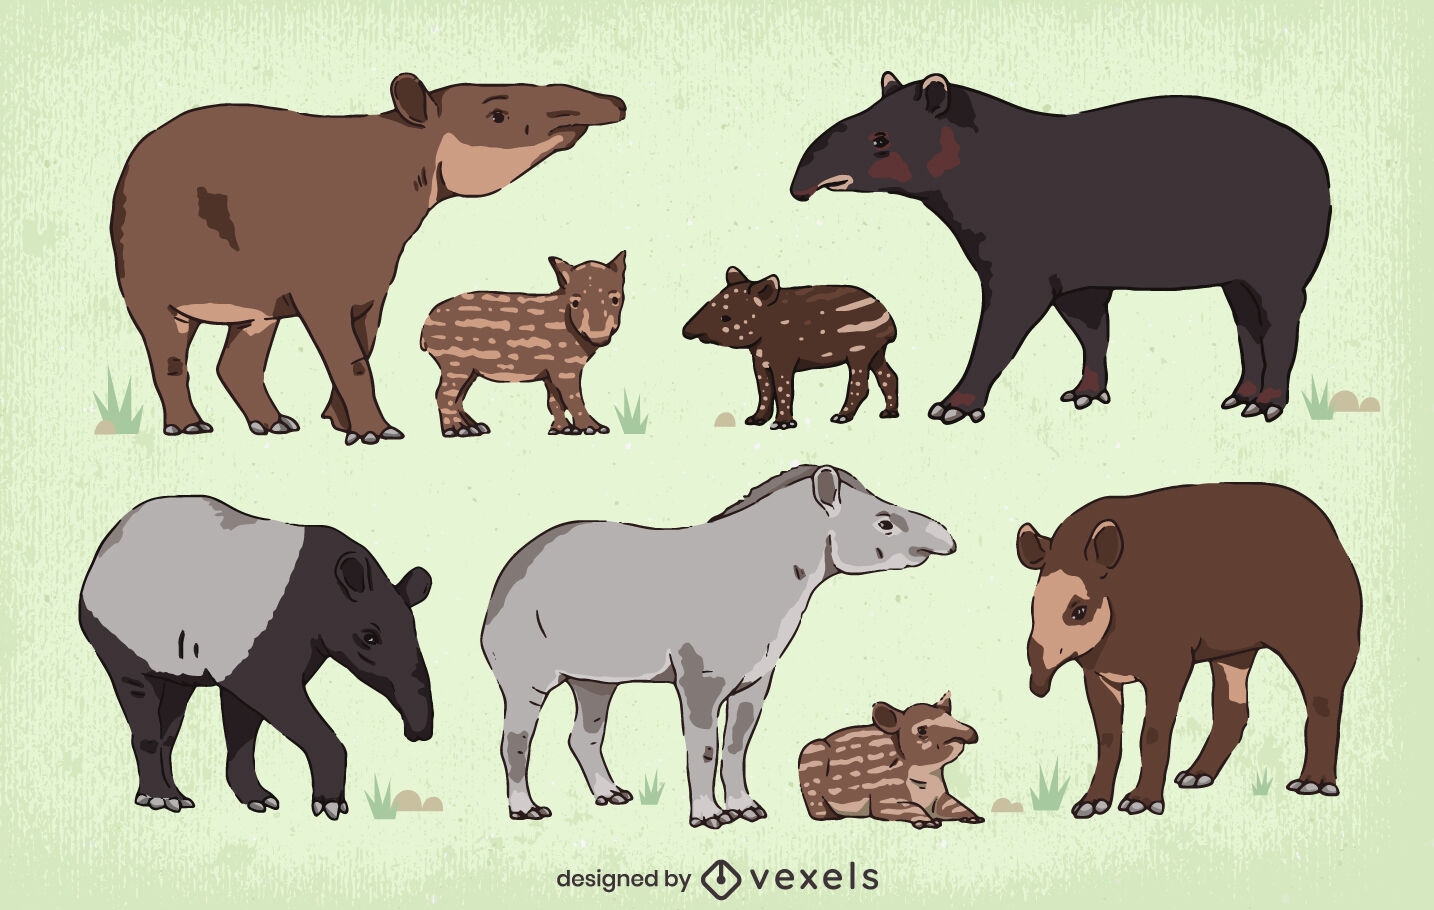 Wildlife tapir animal character set